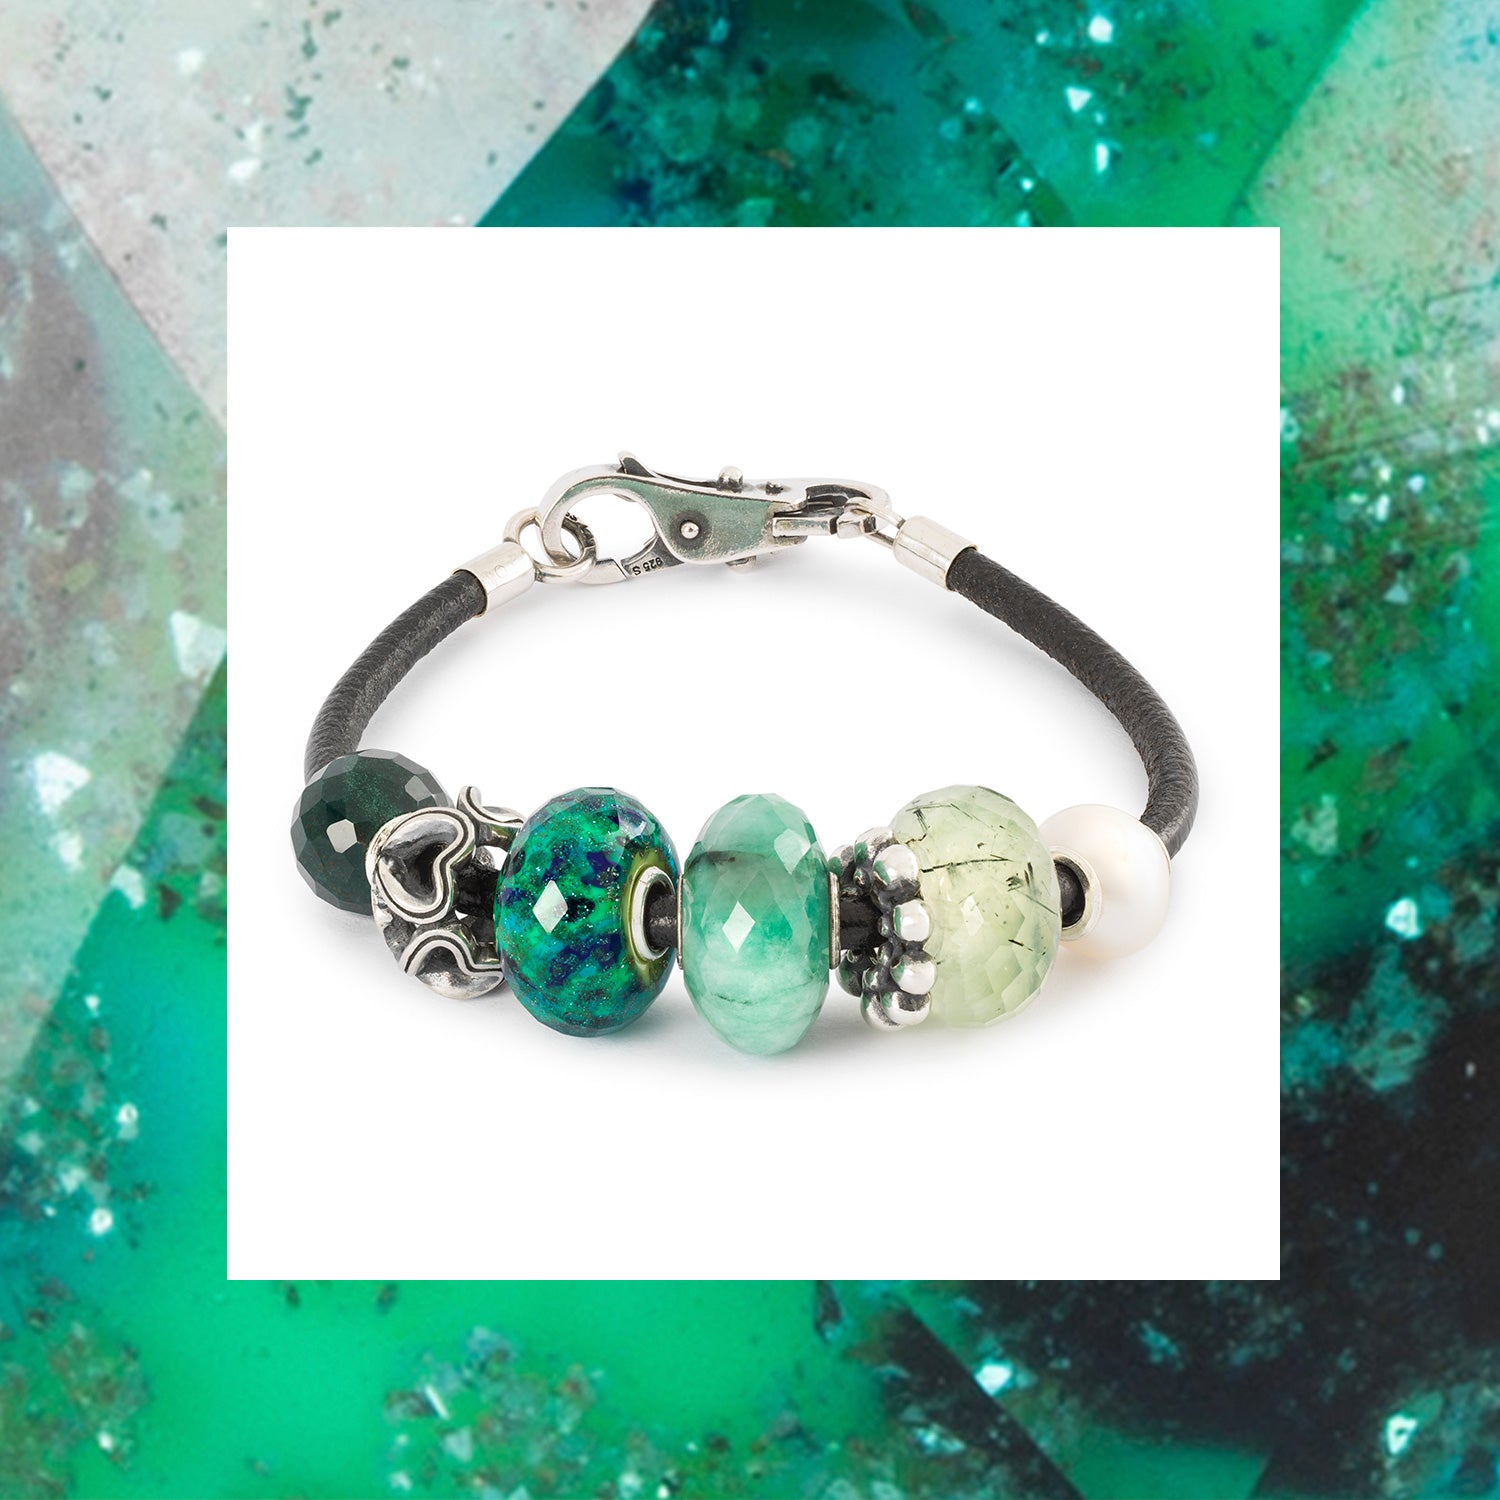 Bracelet en cuir Trollbeads avec des perles en pierre précieuse, en verre et en argent dans les tons verts 